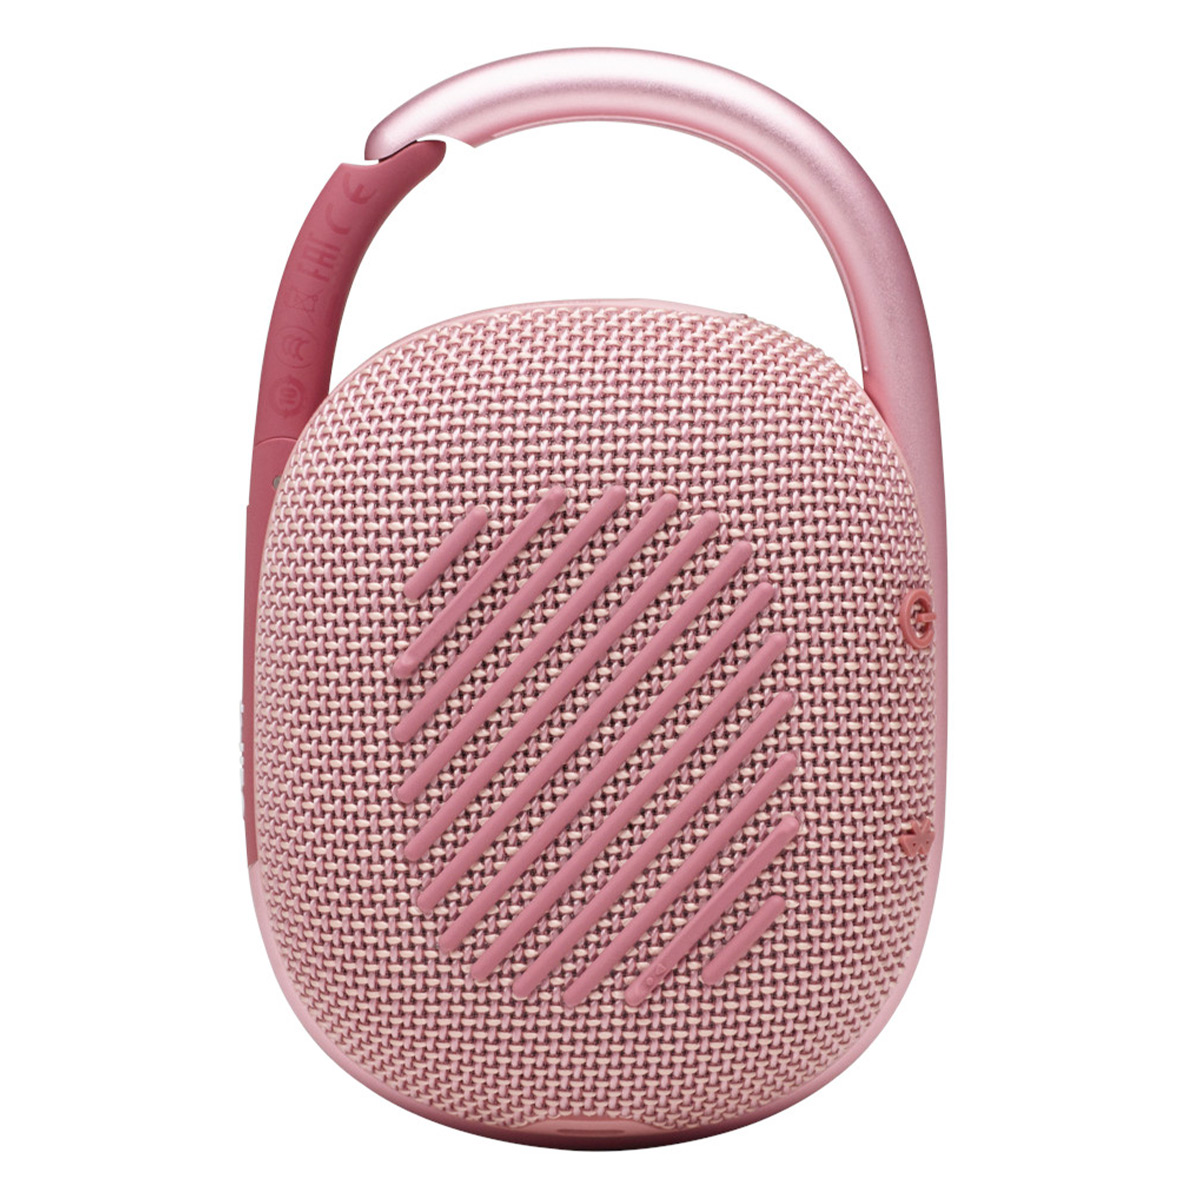 JBL Clip 4 Portable Bluetooth Waterproof Speaker (Pink) - image 4 of 8